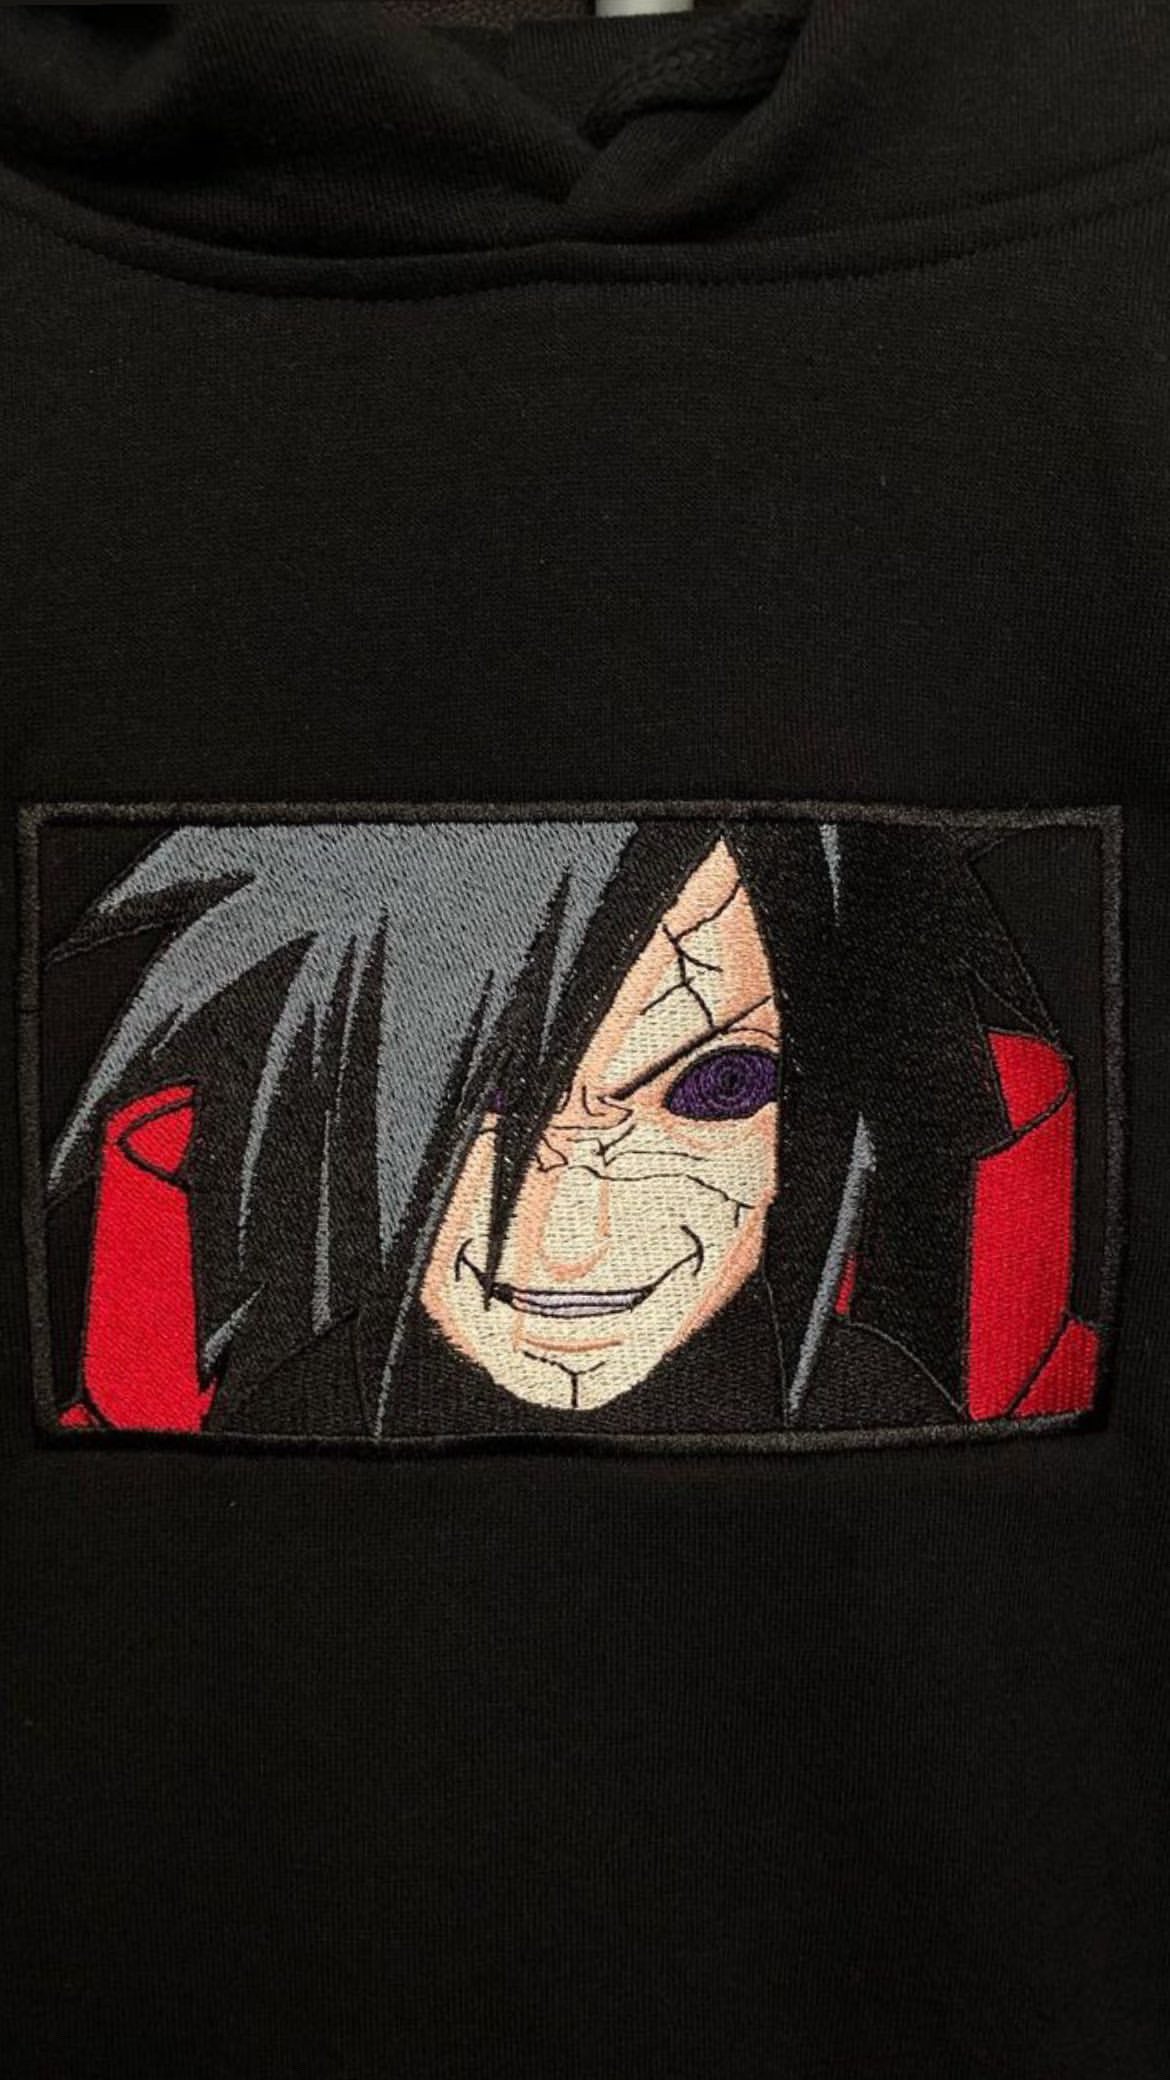 Madara Box Embroidery (Naruto)